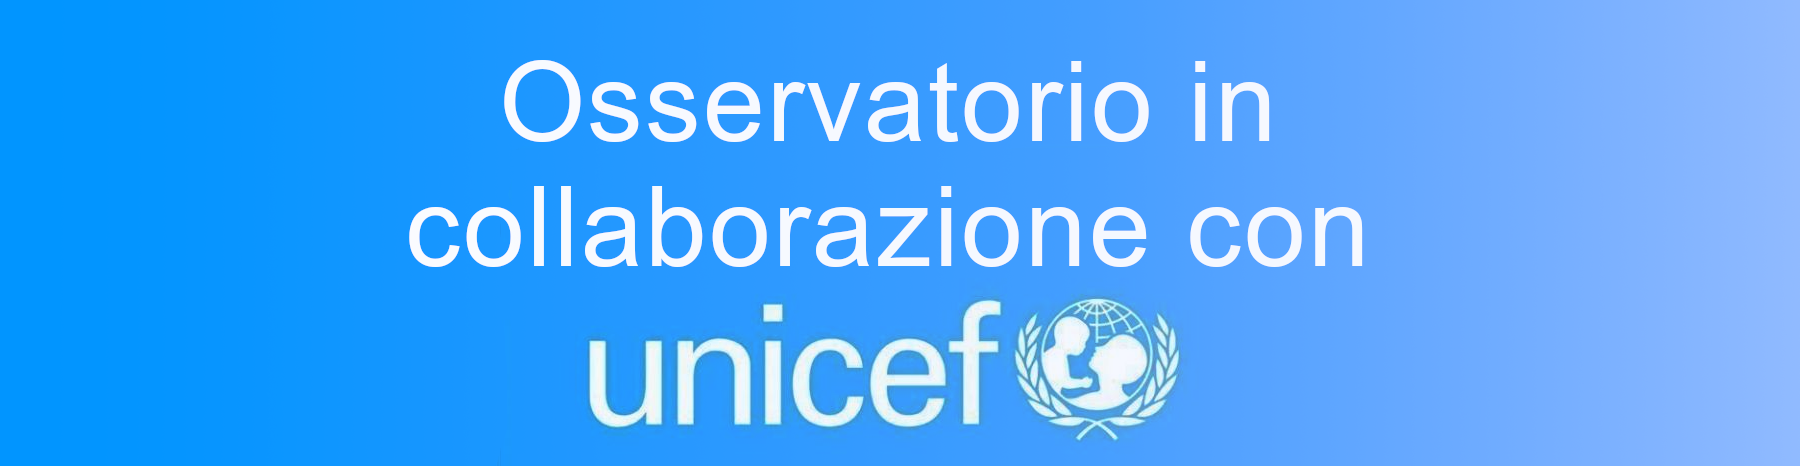 Osservatorio in collaborazione con Unicef